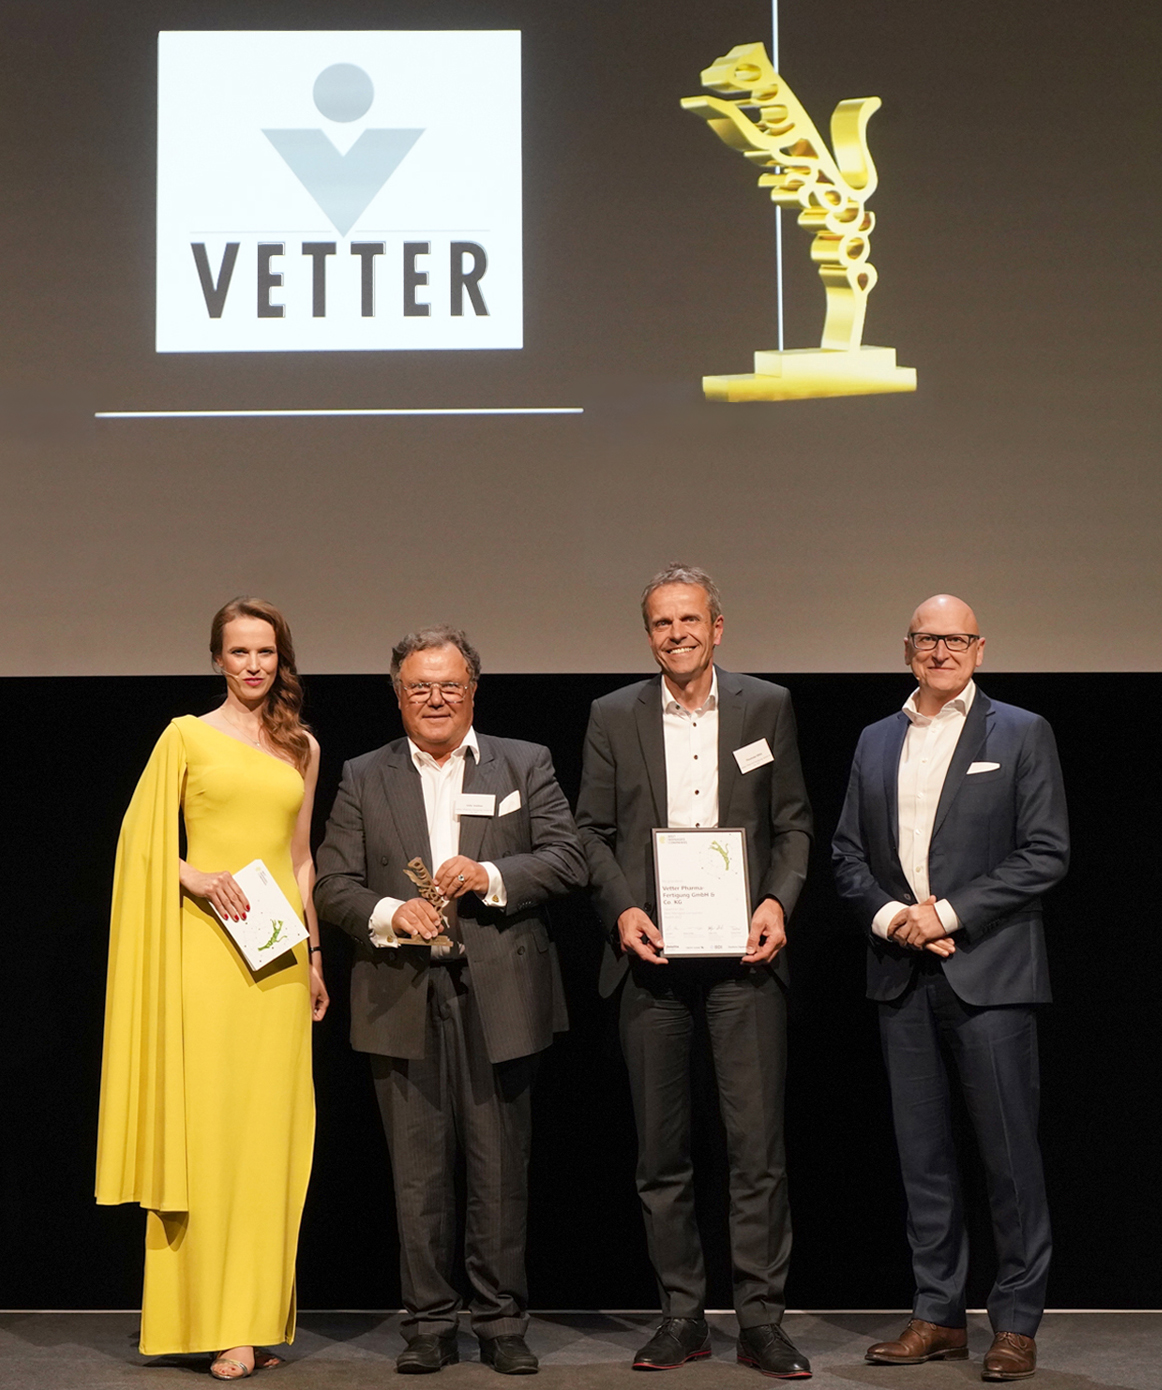 Hãng dịch vụ dược phẩm Vetter giành được Giải thưởng Công ty được quản lý tốt nhất năm thứ 3 liên tiếp